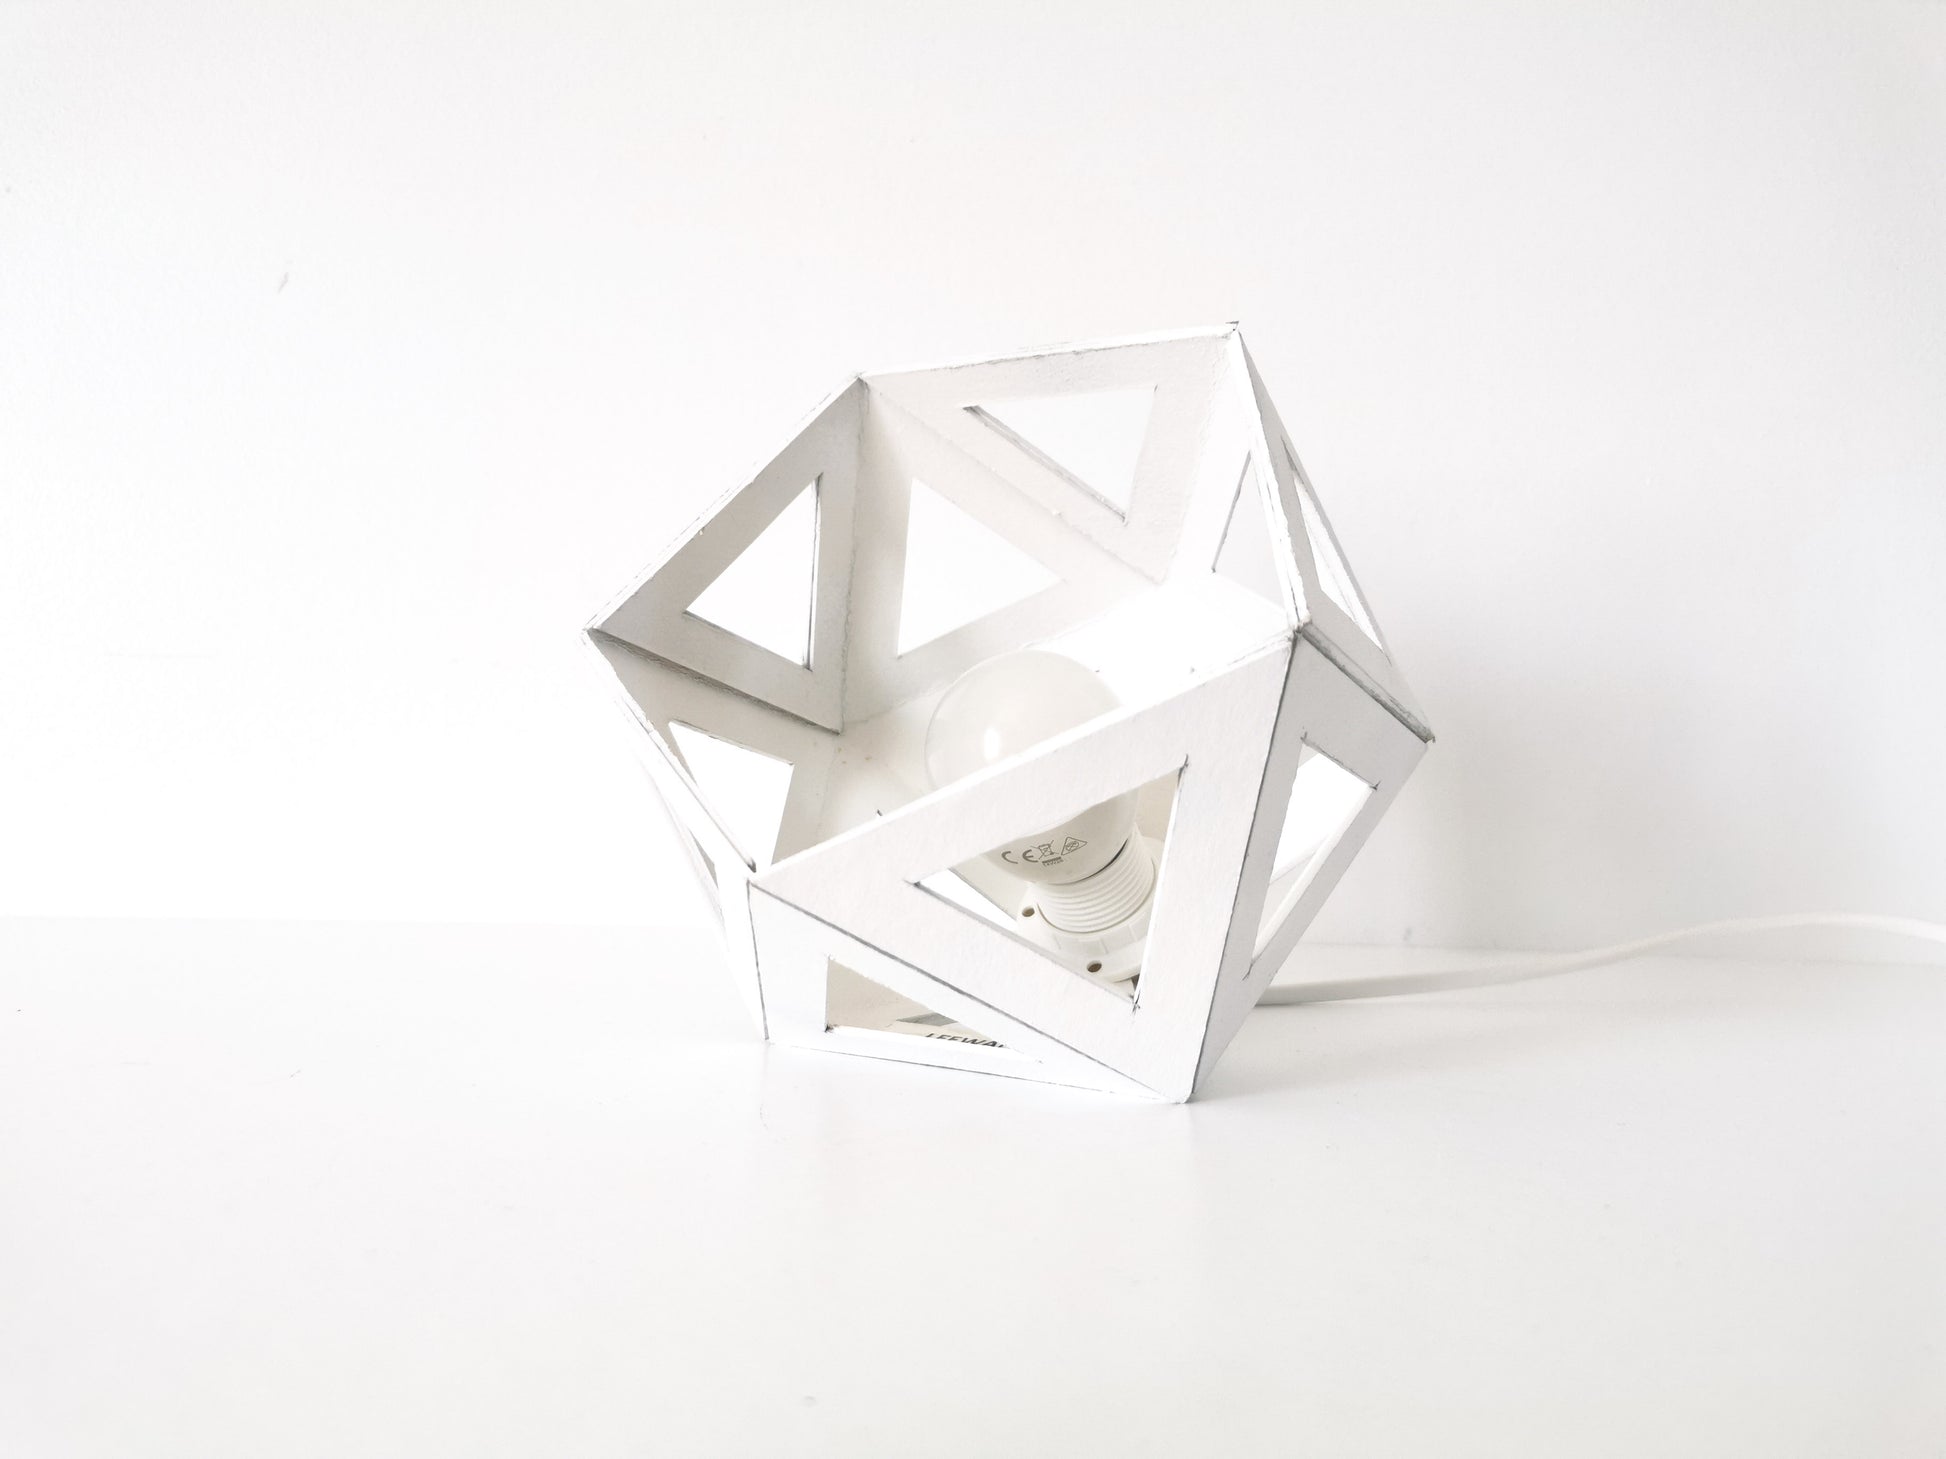 Une petite Lampe Blanche Design made in France de forme géométrique.